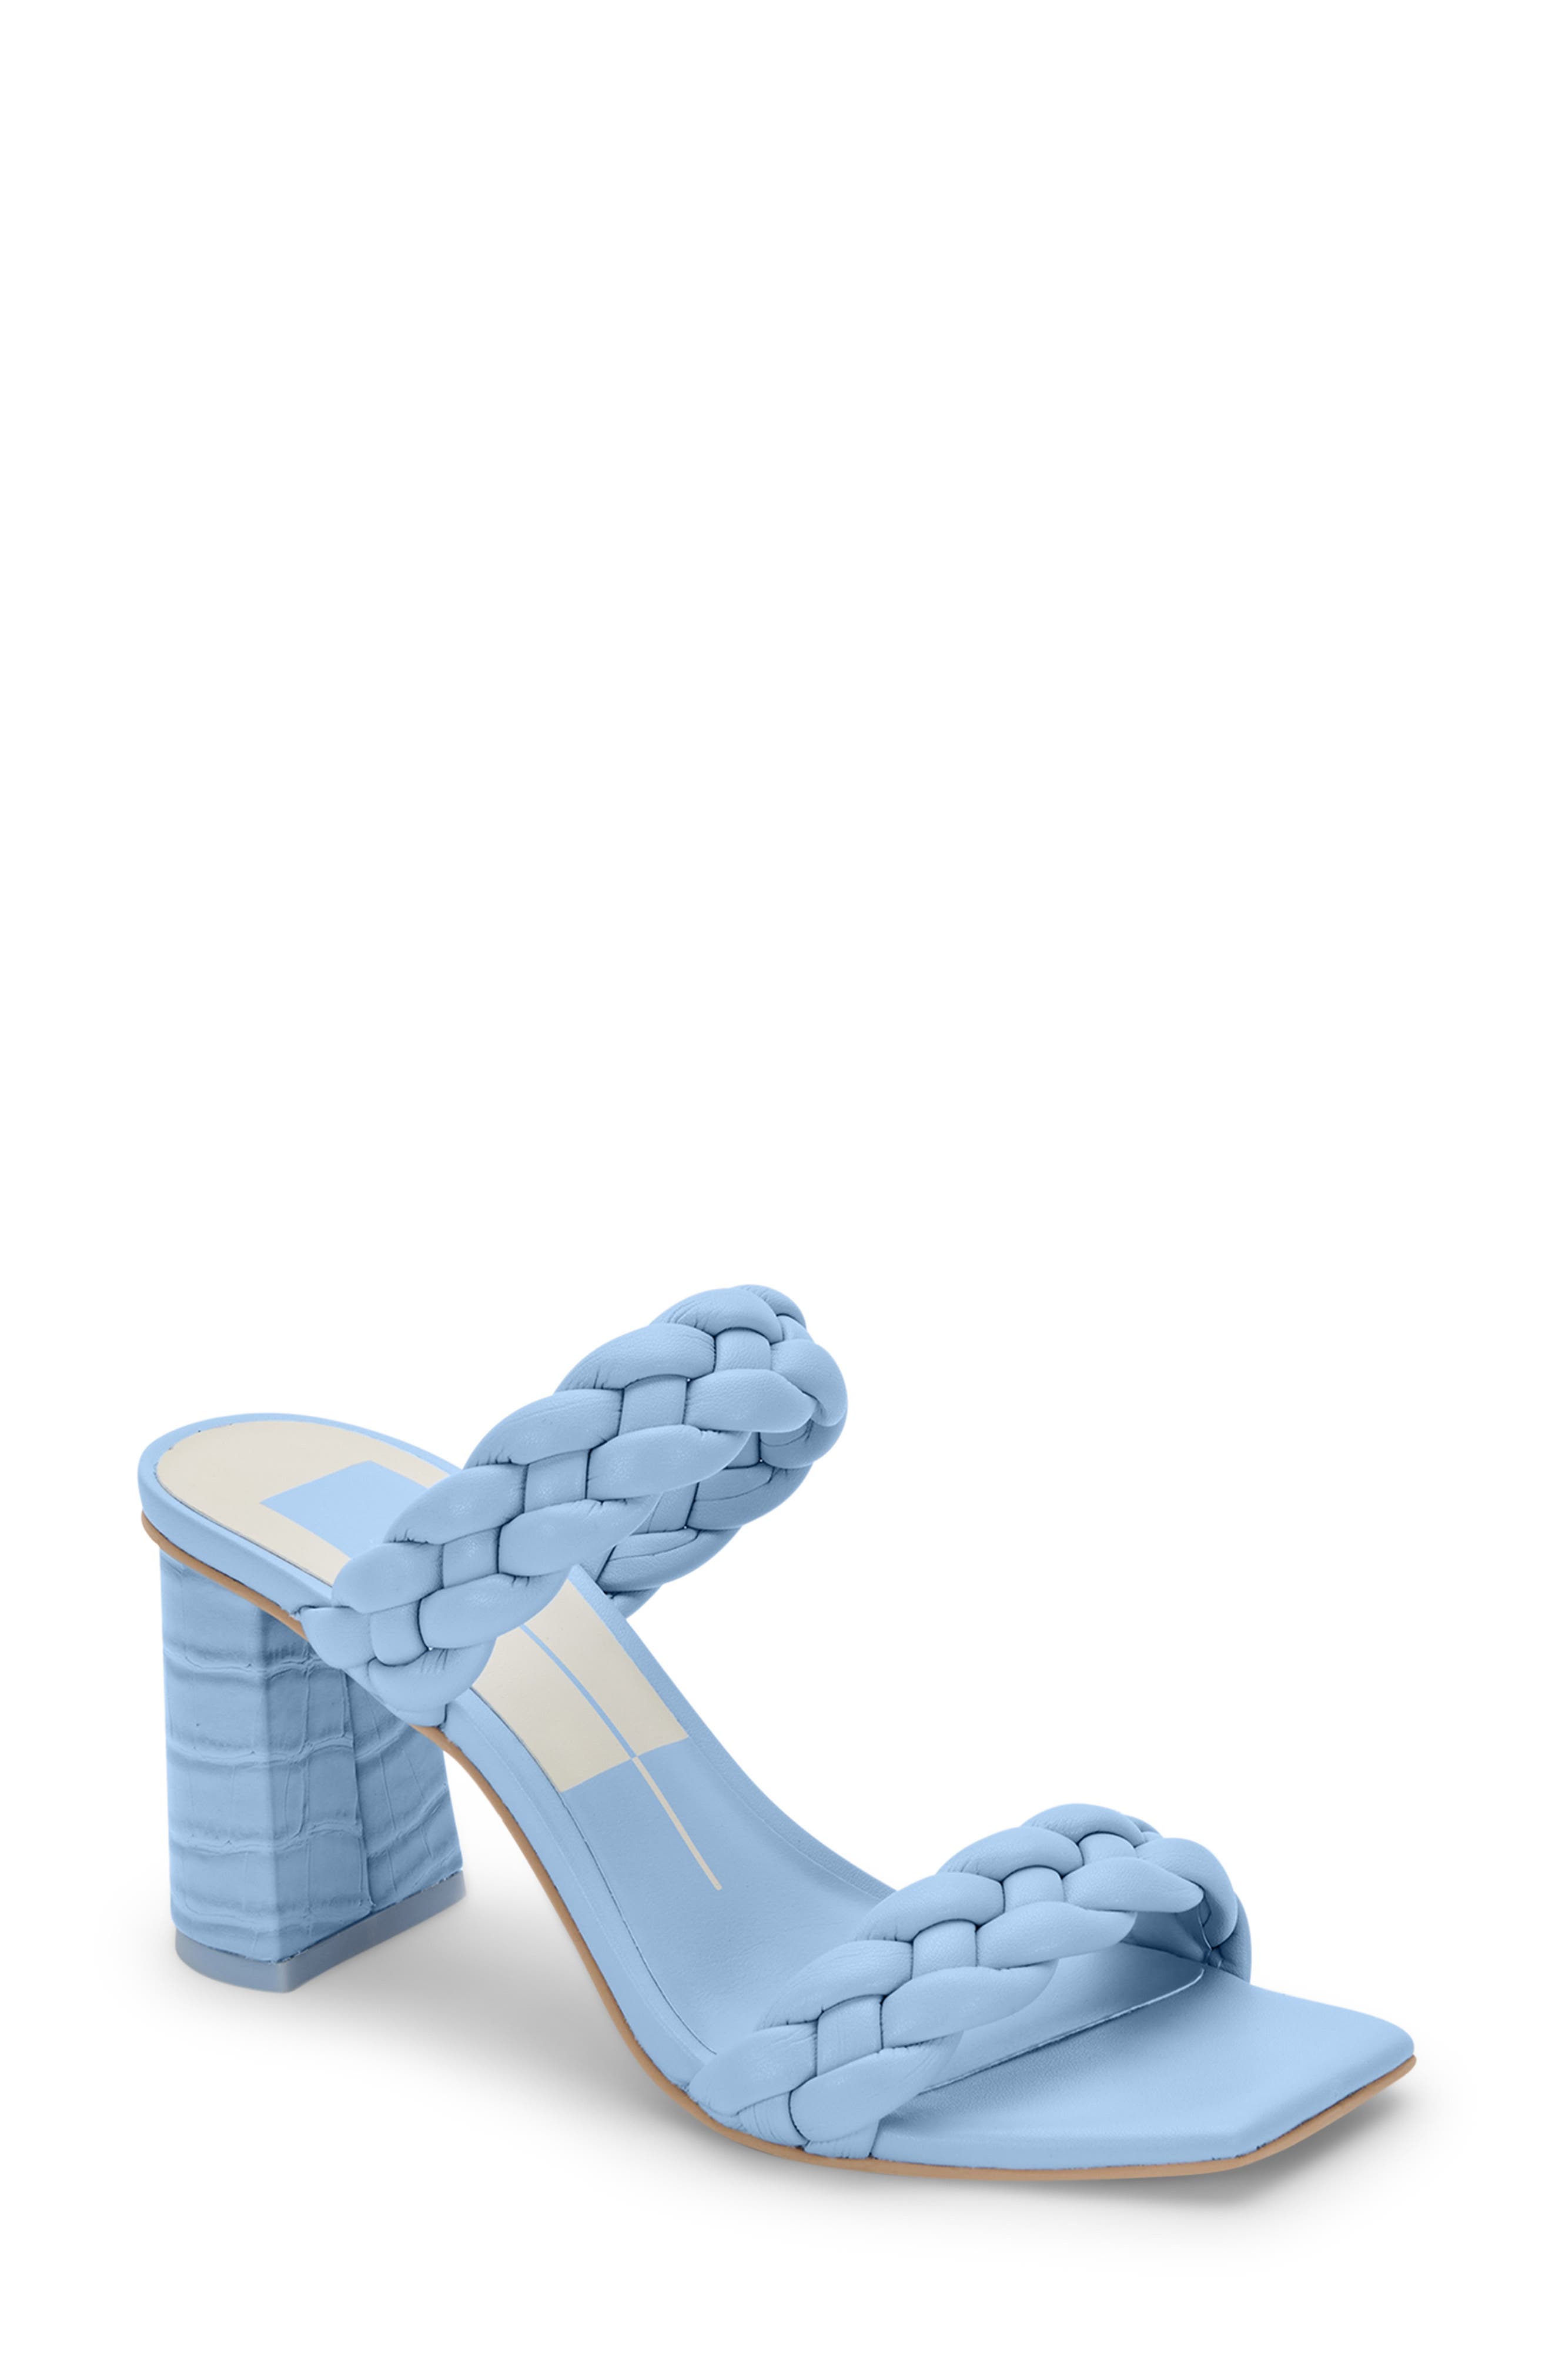 Buy > electric blue block heels > in stock